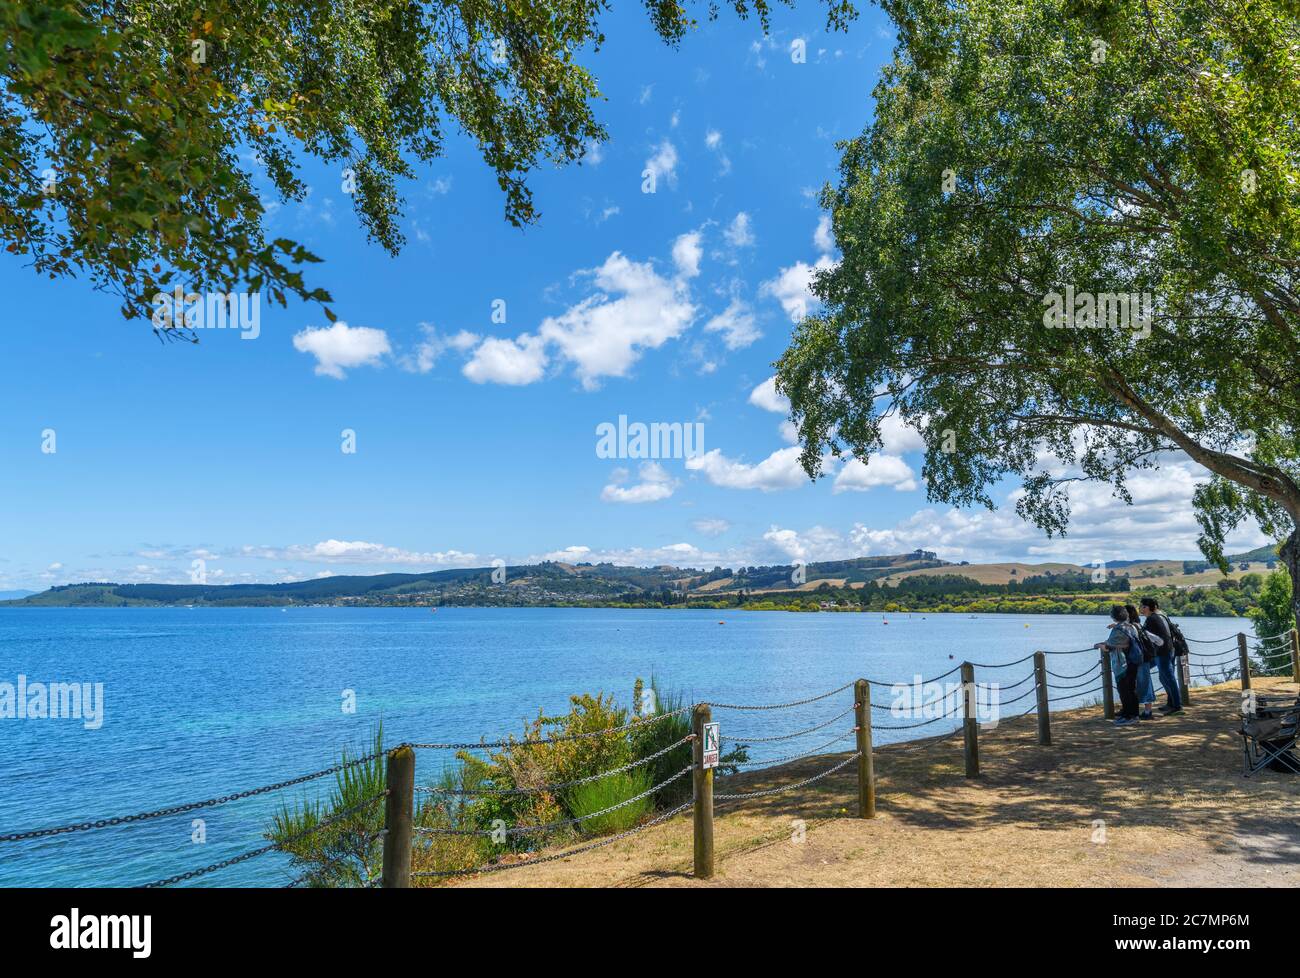 Touristen am See in Taupo, Lake Taupo, Neuseeland Stockfoto